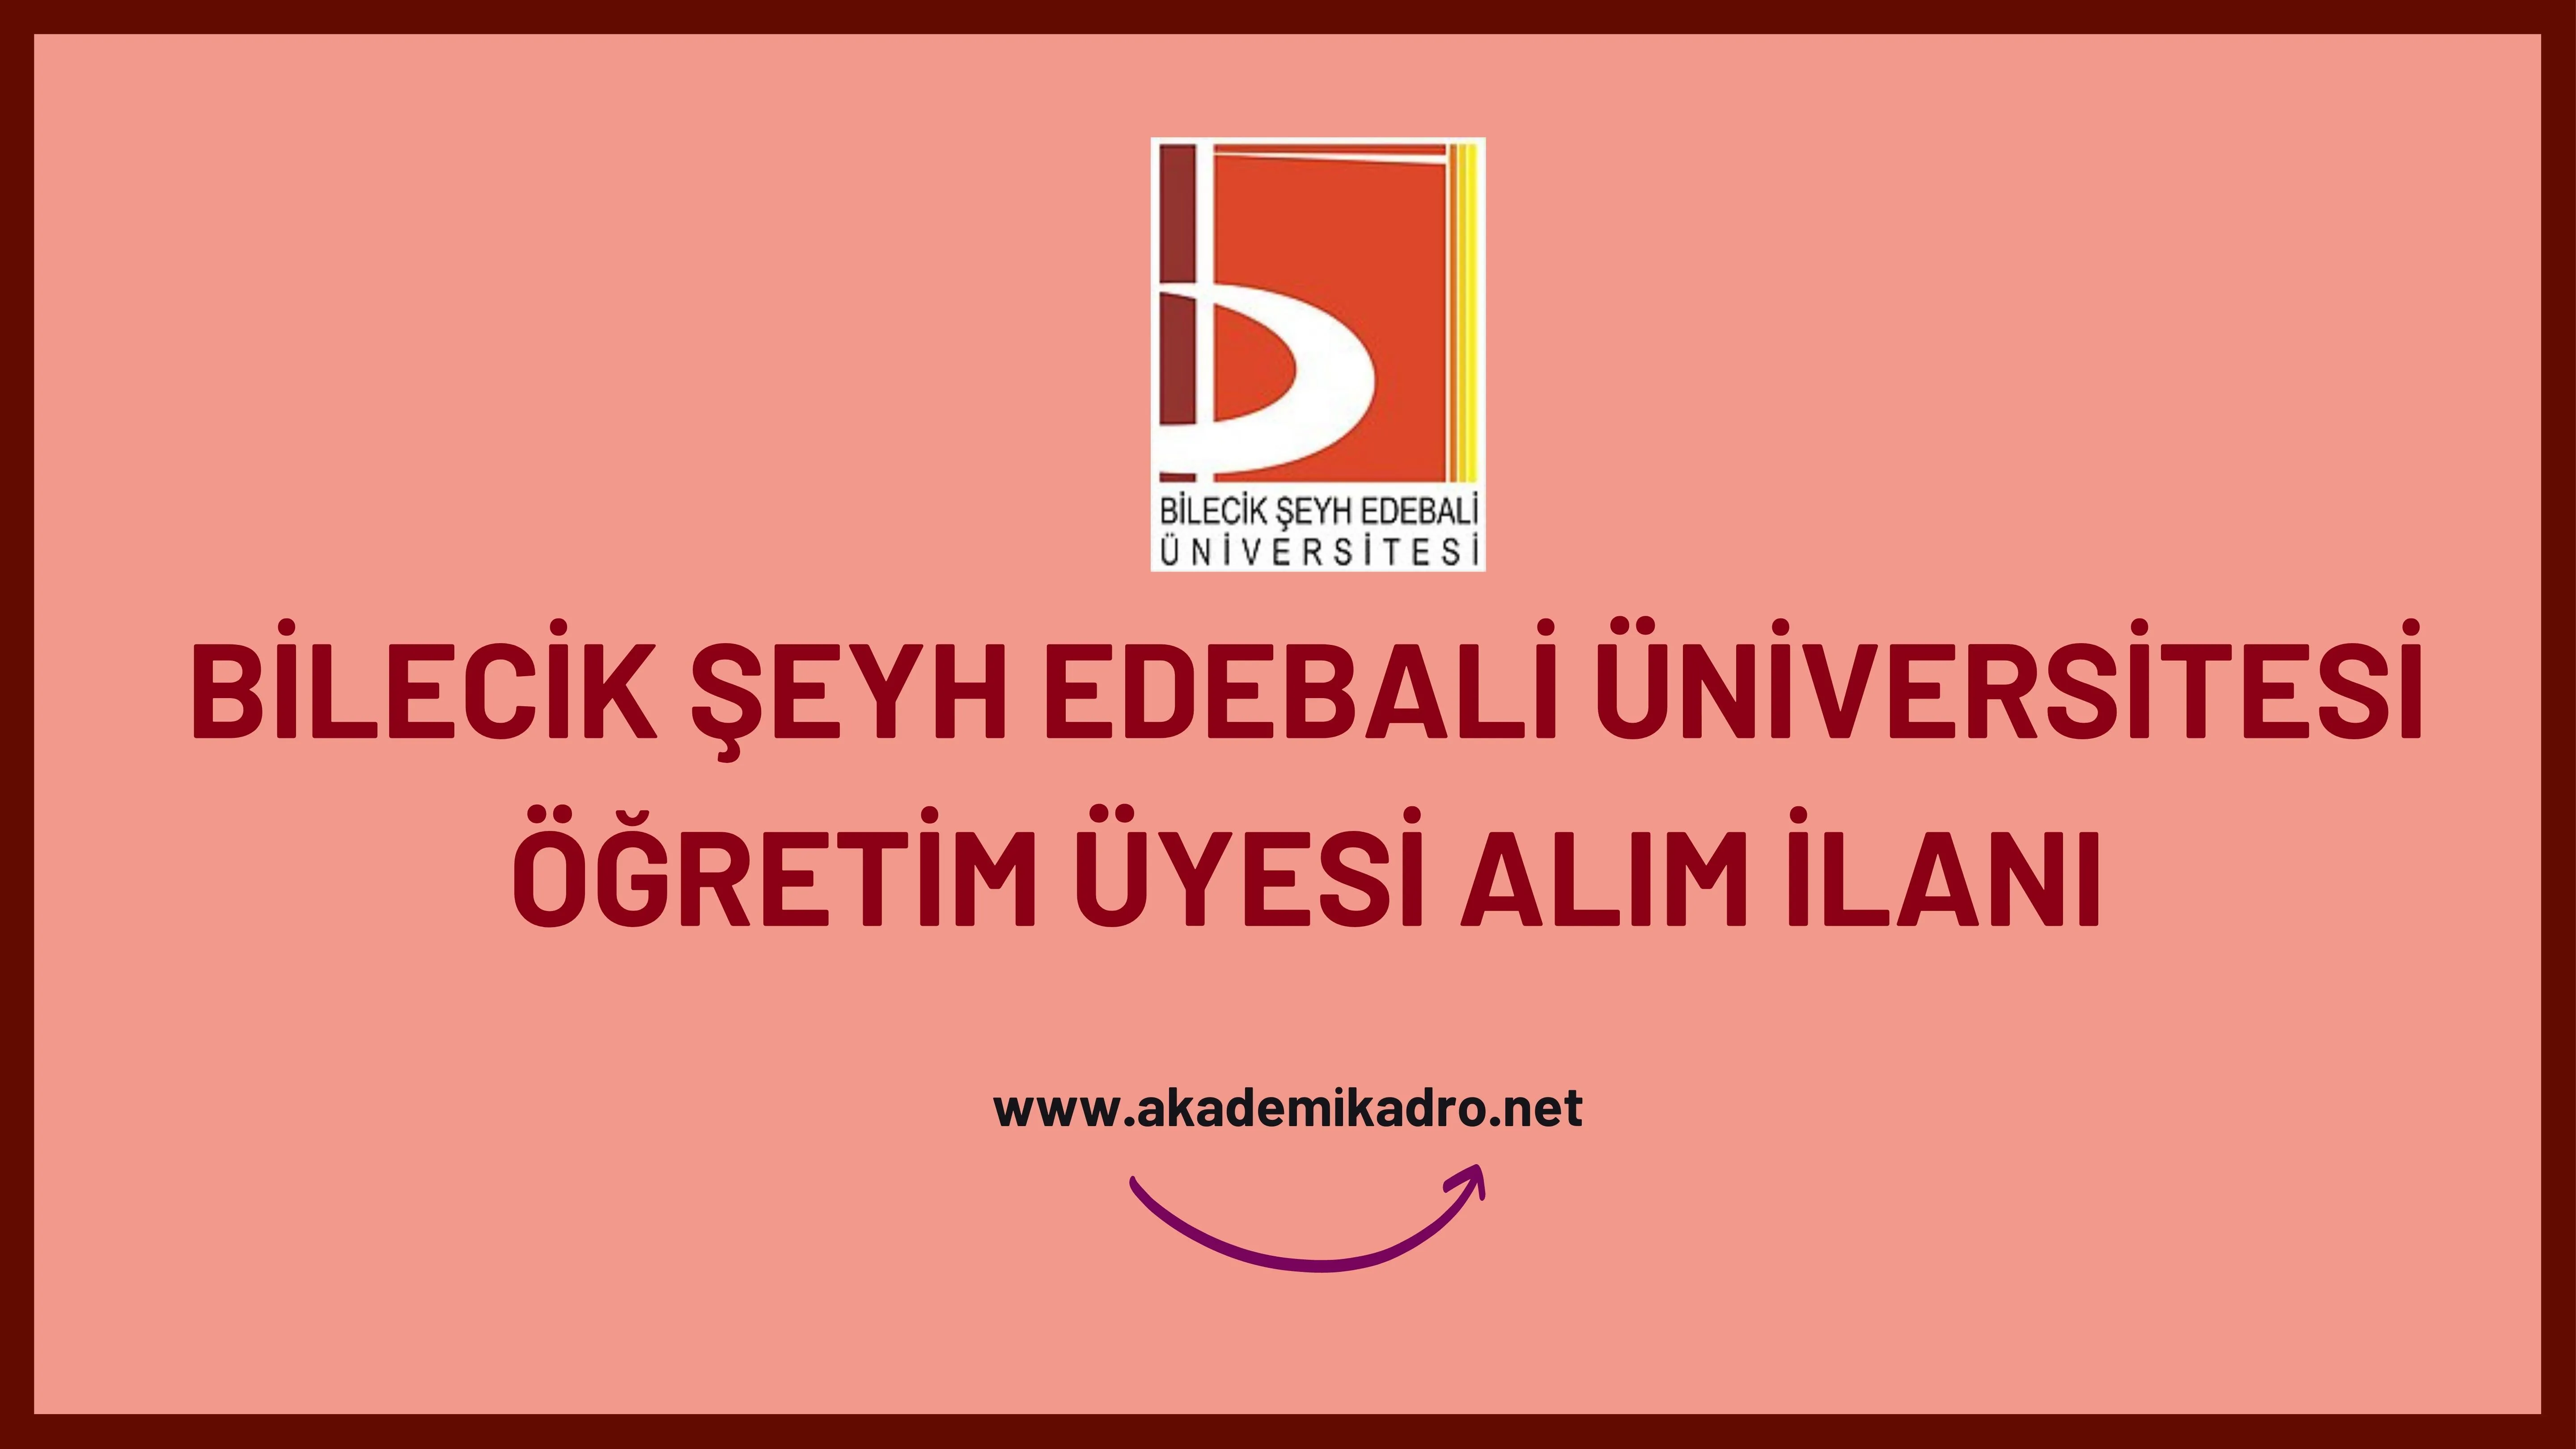 Bilecik Şeyh Edebali Üniversitesi  birçok alandan 34 Çğretim üyesi alacak. Son başvuru tarihi 11 Temmuz 2023.